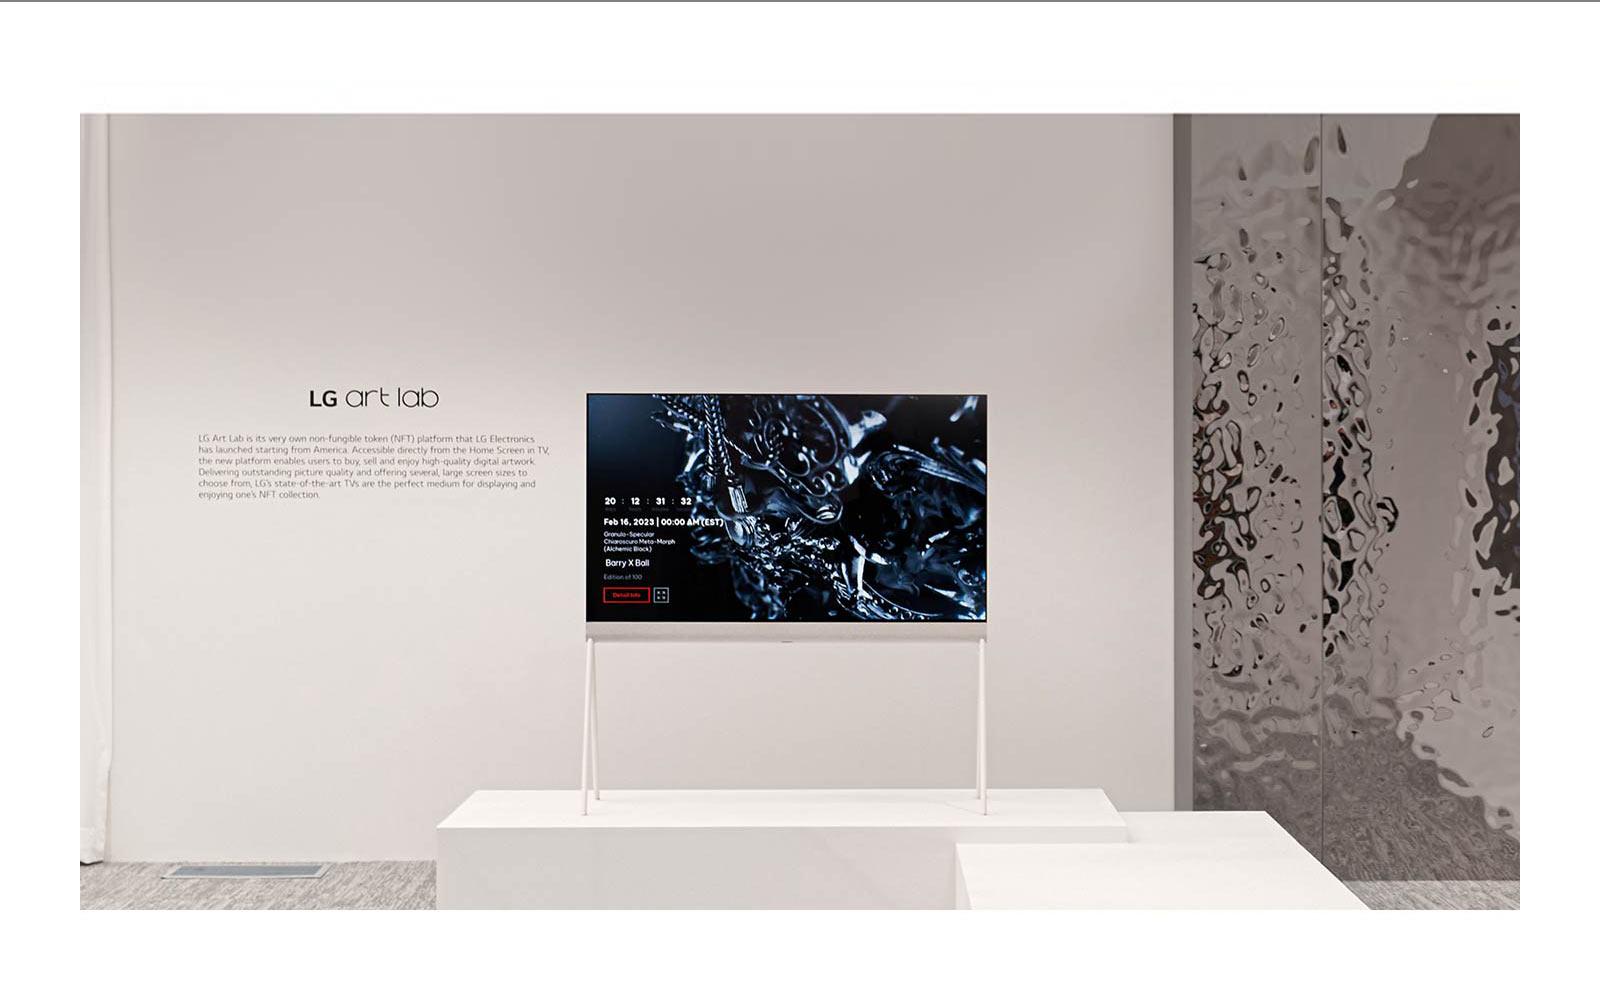 白色房內一張畫架圖片顯示螢幕上黑色雕刻的數位藝術品。電視右側的銀色實體雕刻顯示房間的倒影。